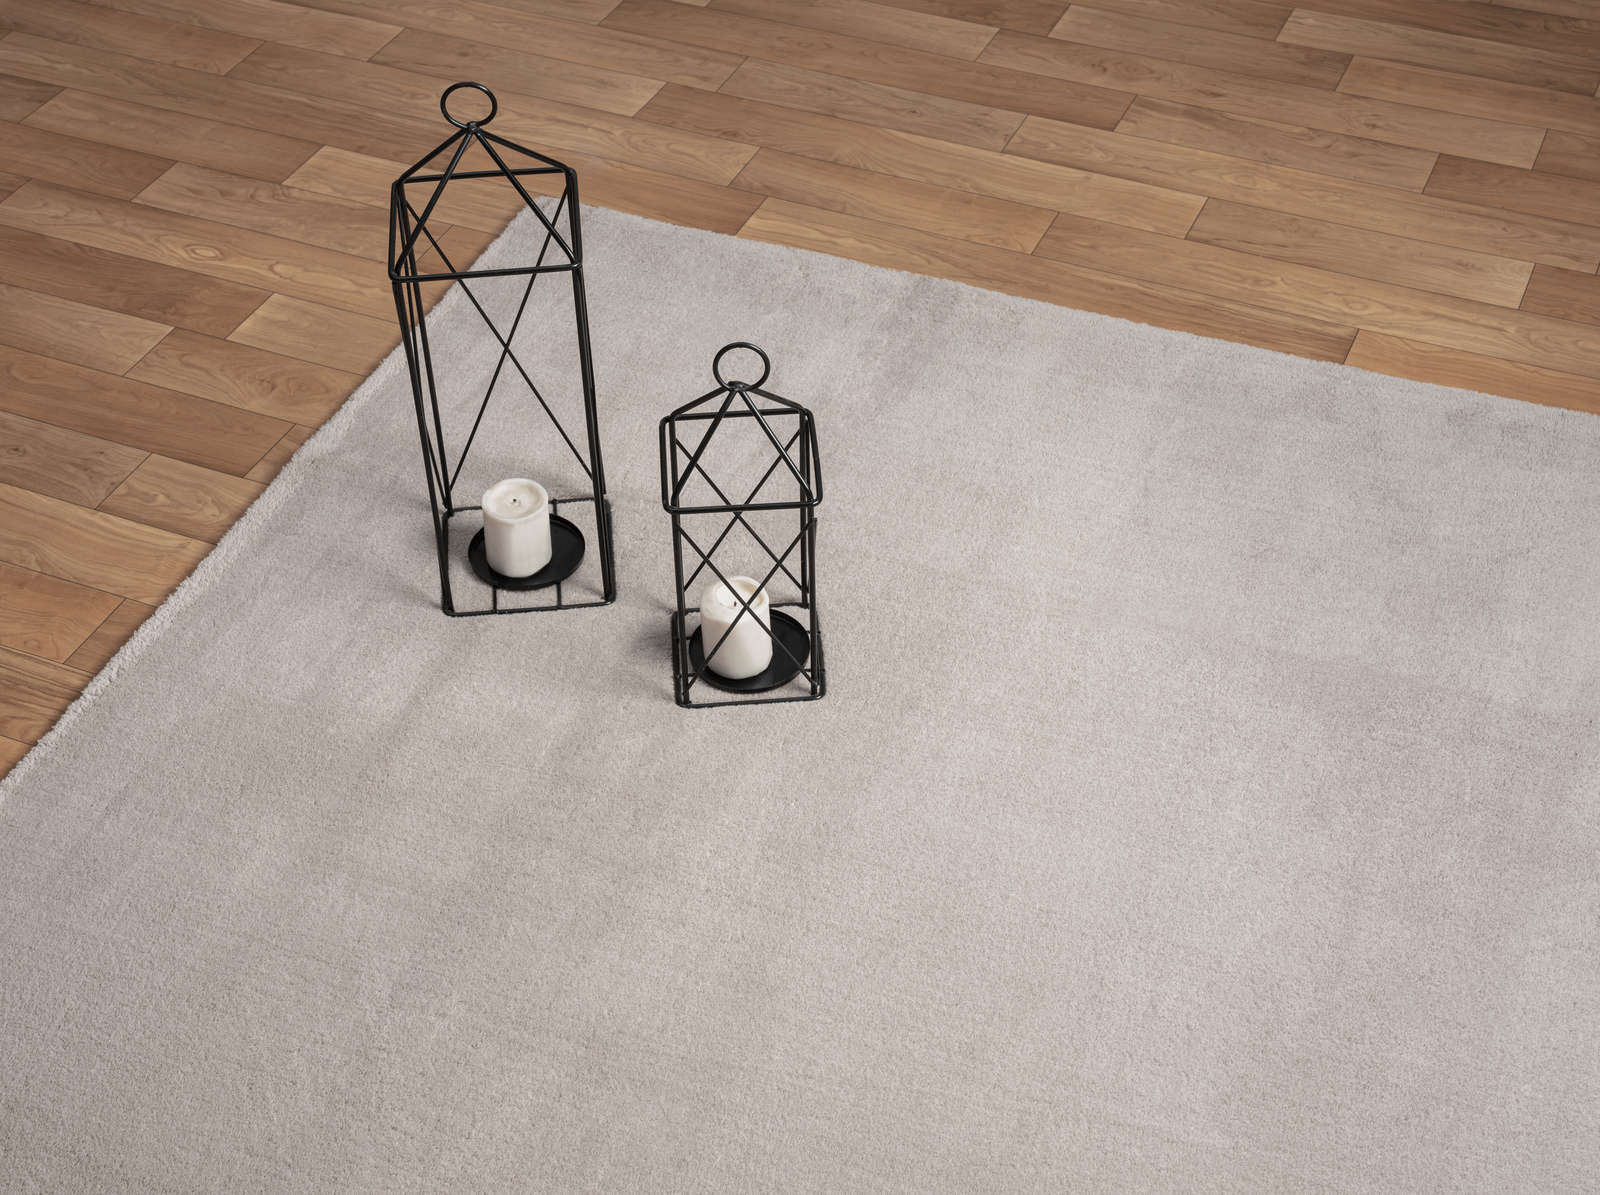             Modischer Hochflor Teppich in Sand – 110 x 60 cm
        